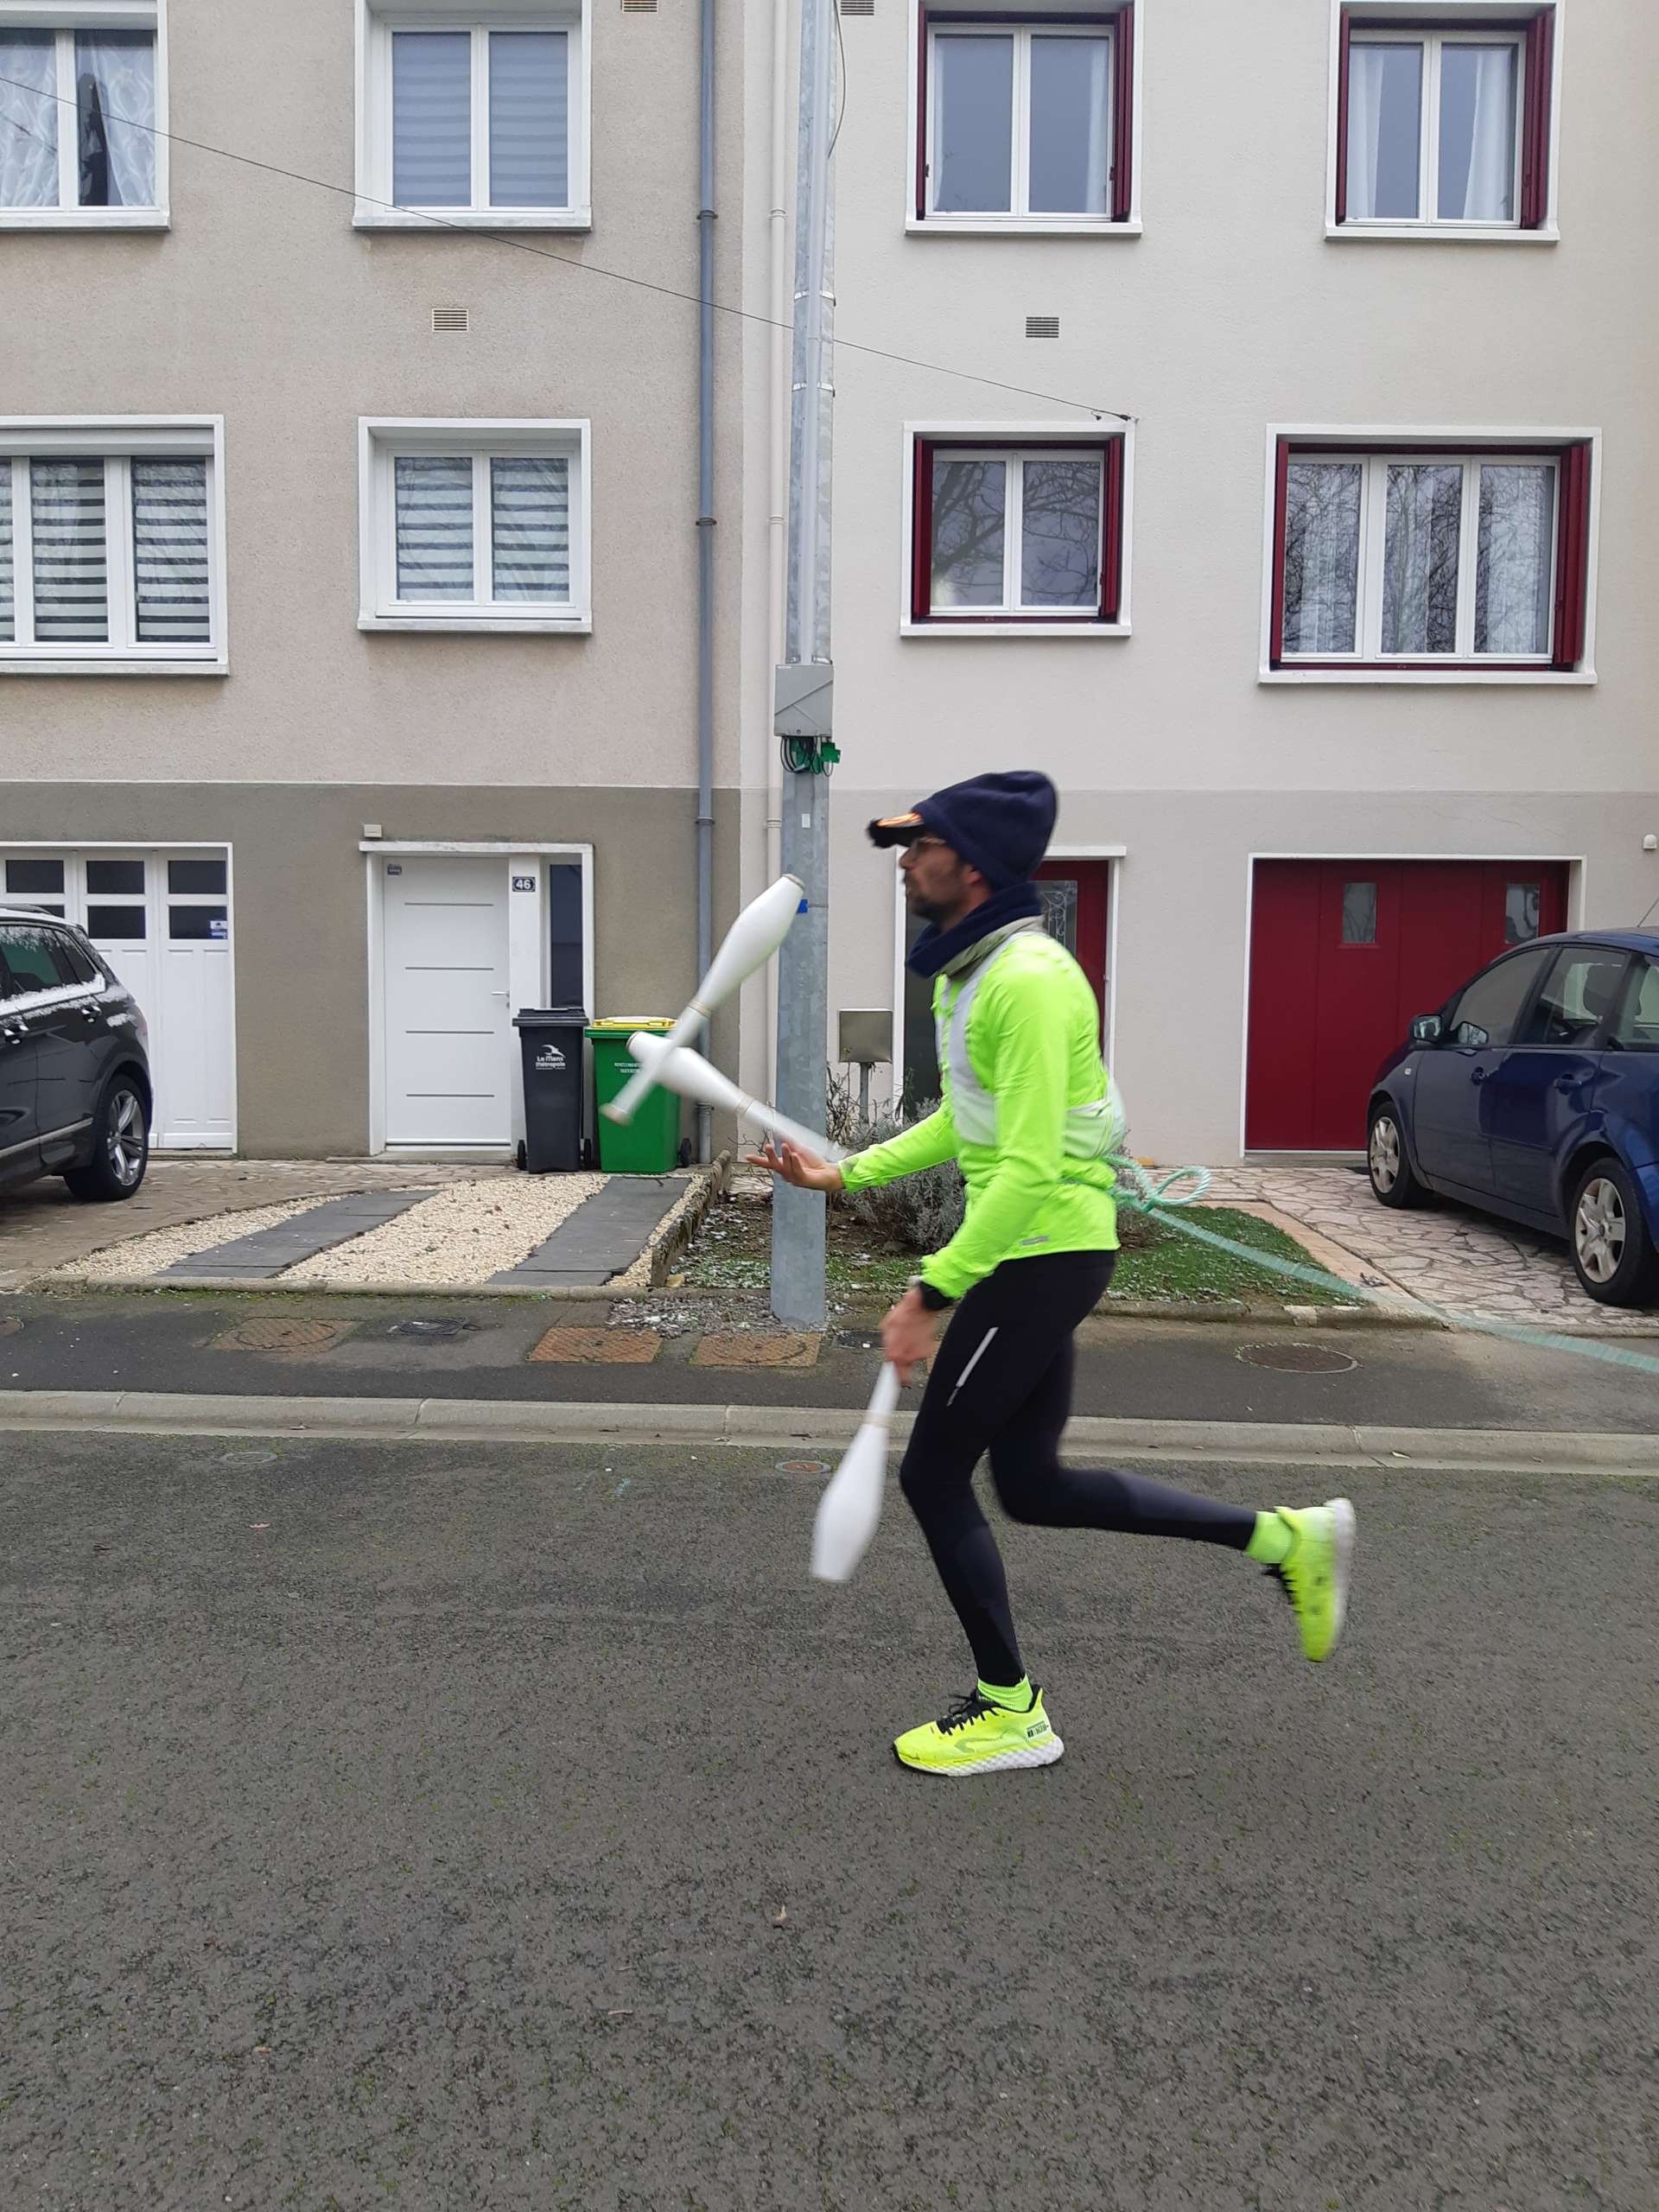 Un jongleur court dans une rue résidentielle